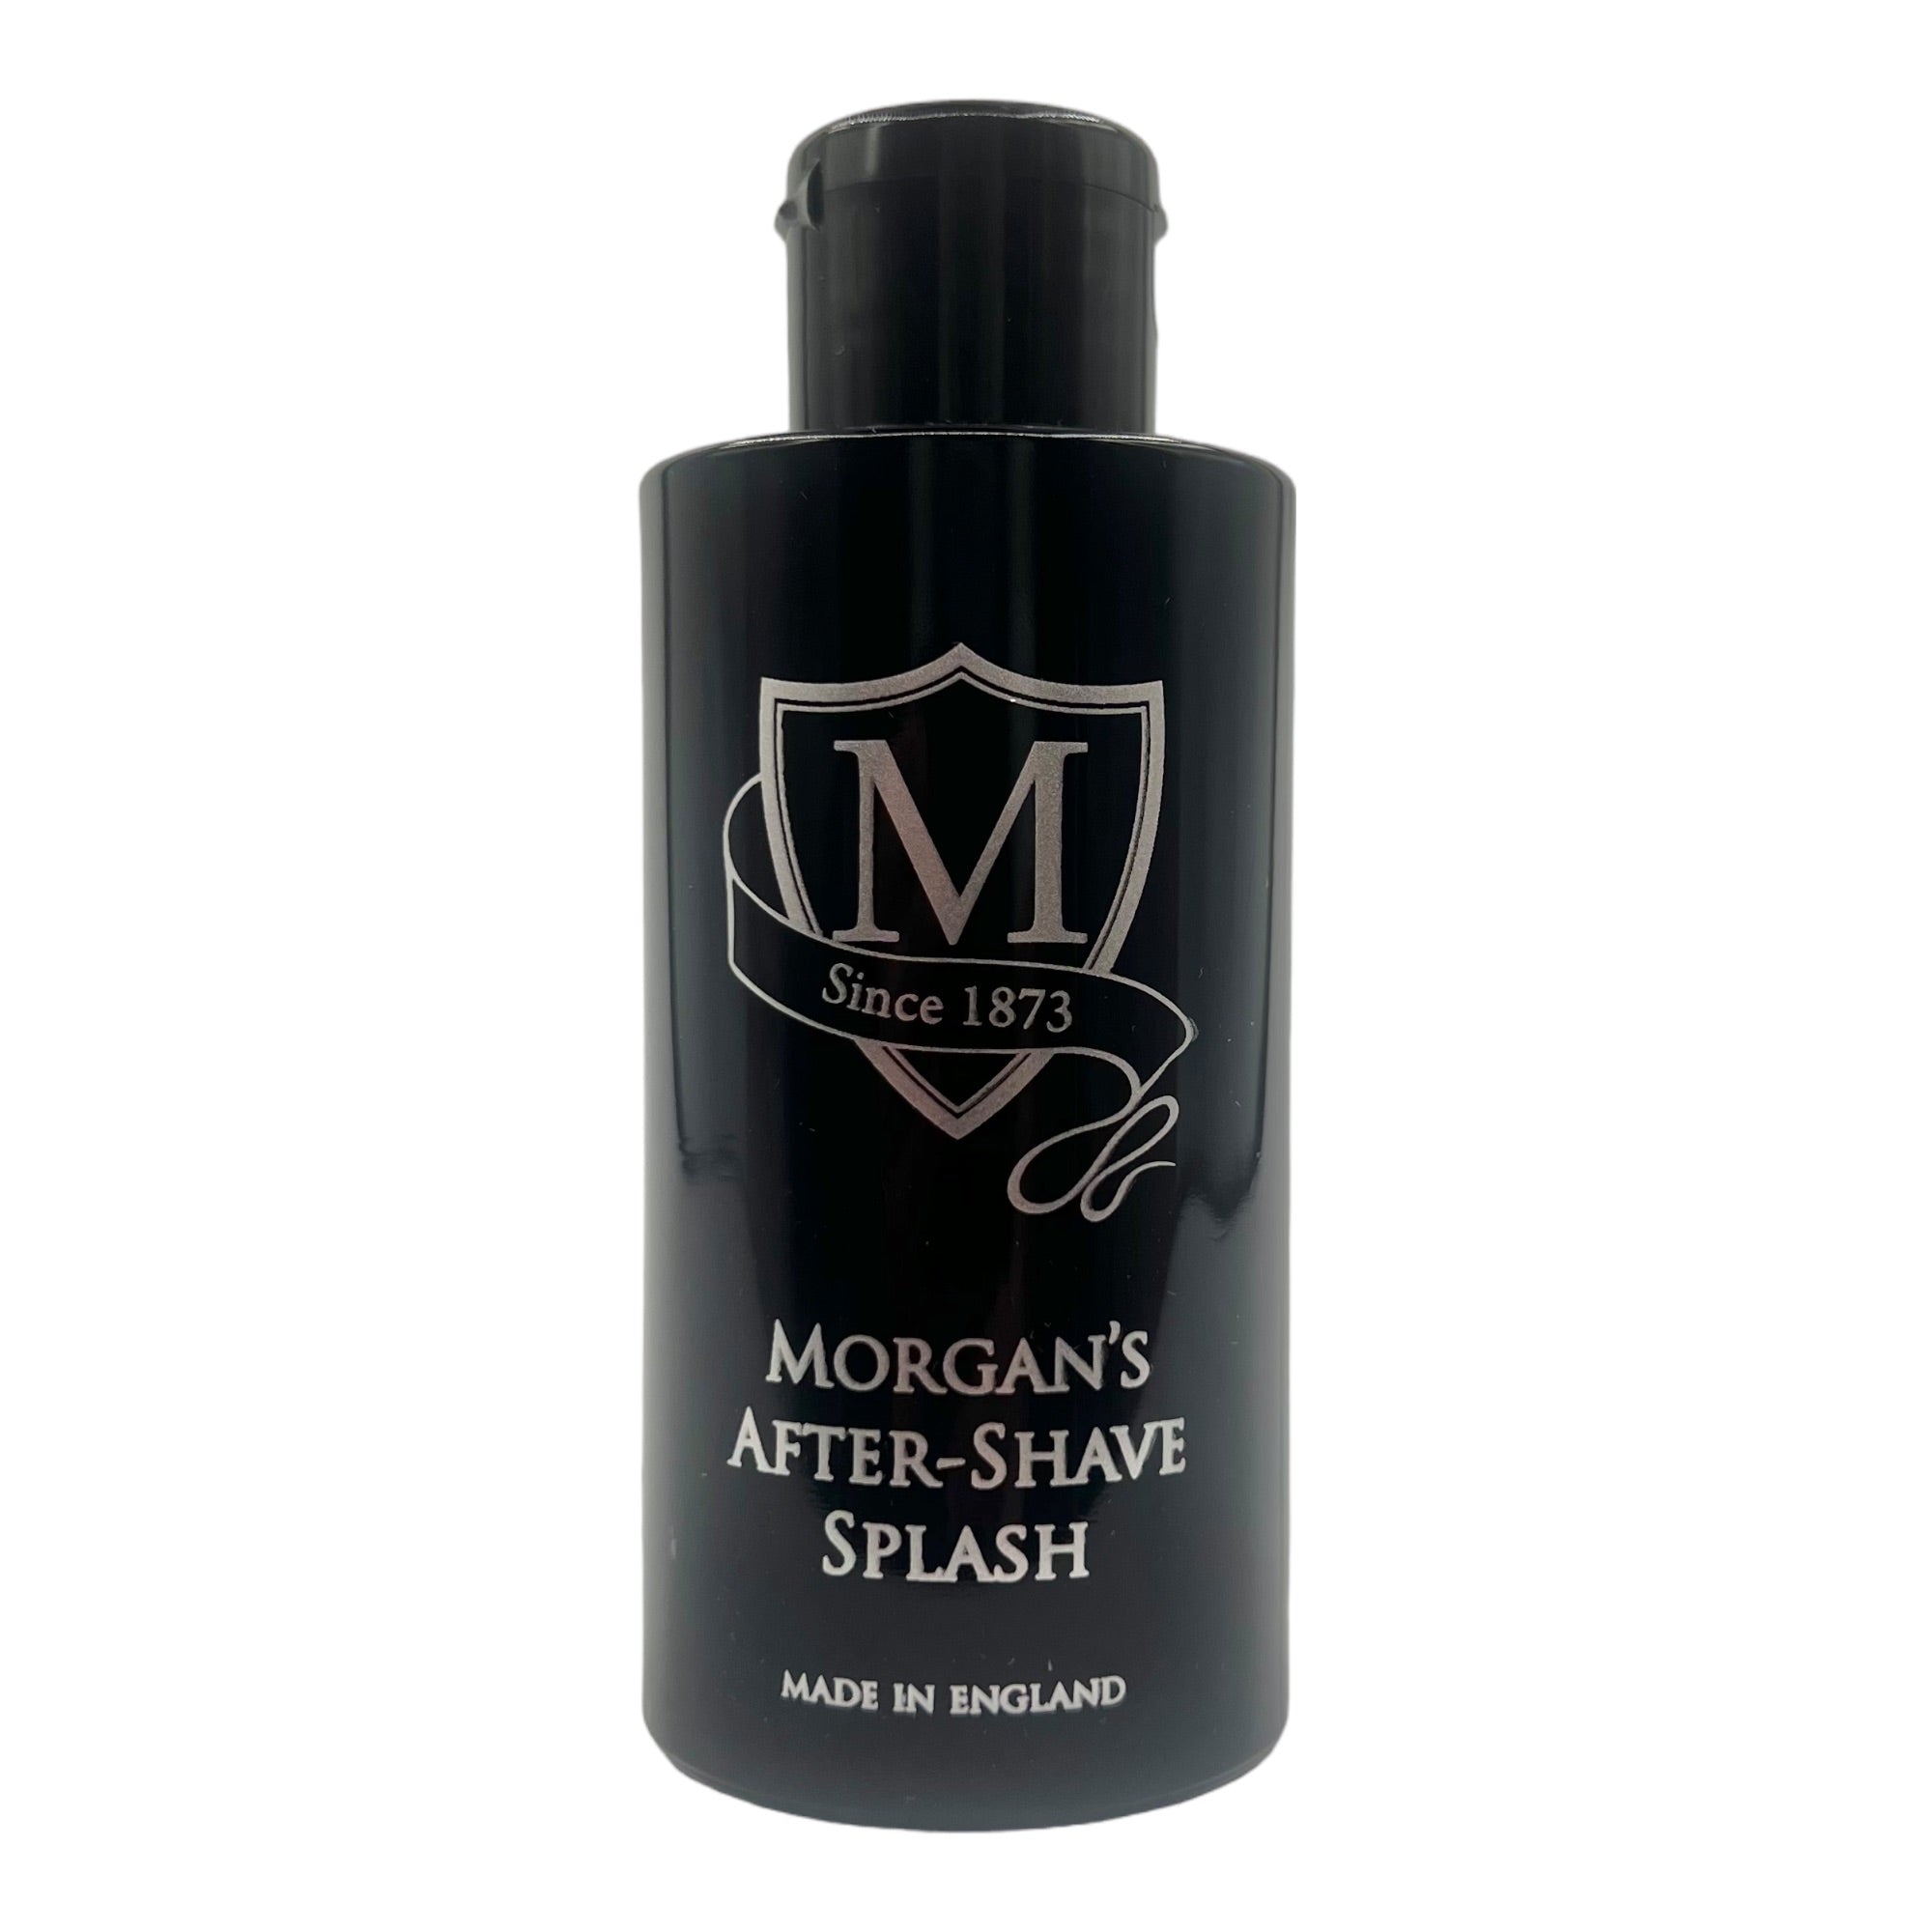 Morgan's - After-Shave Splash 100ml